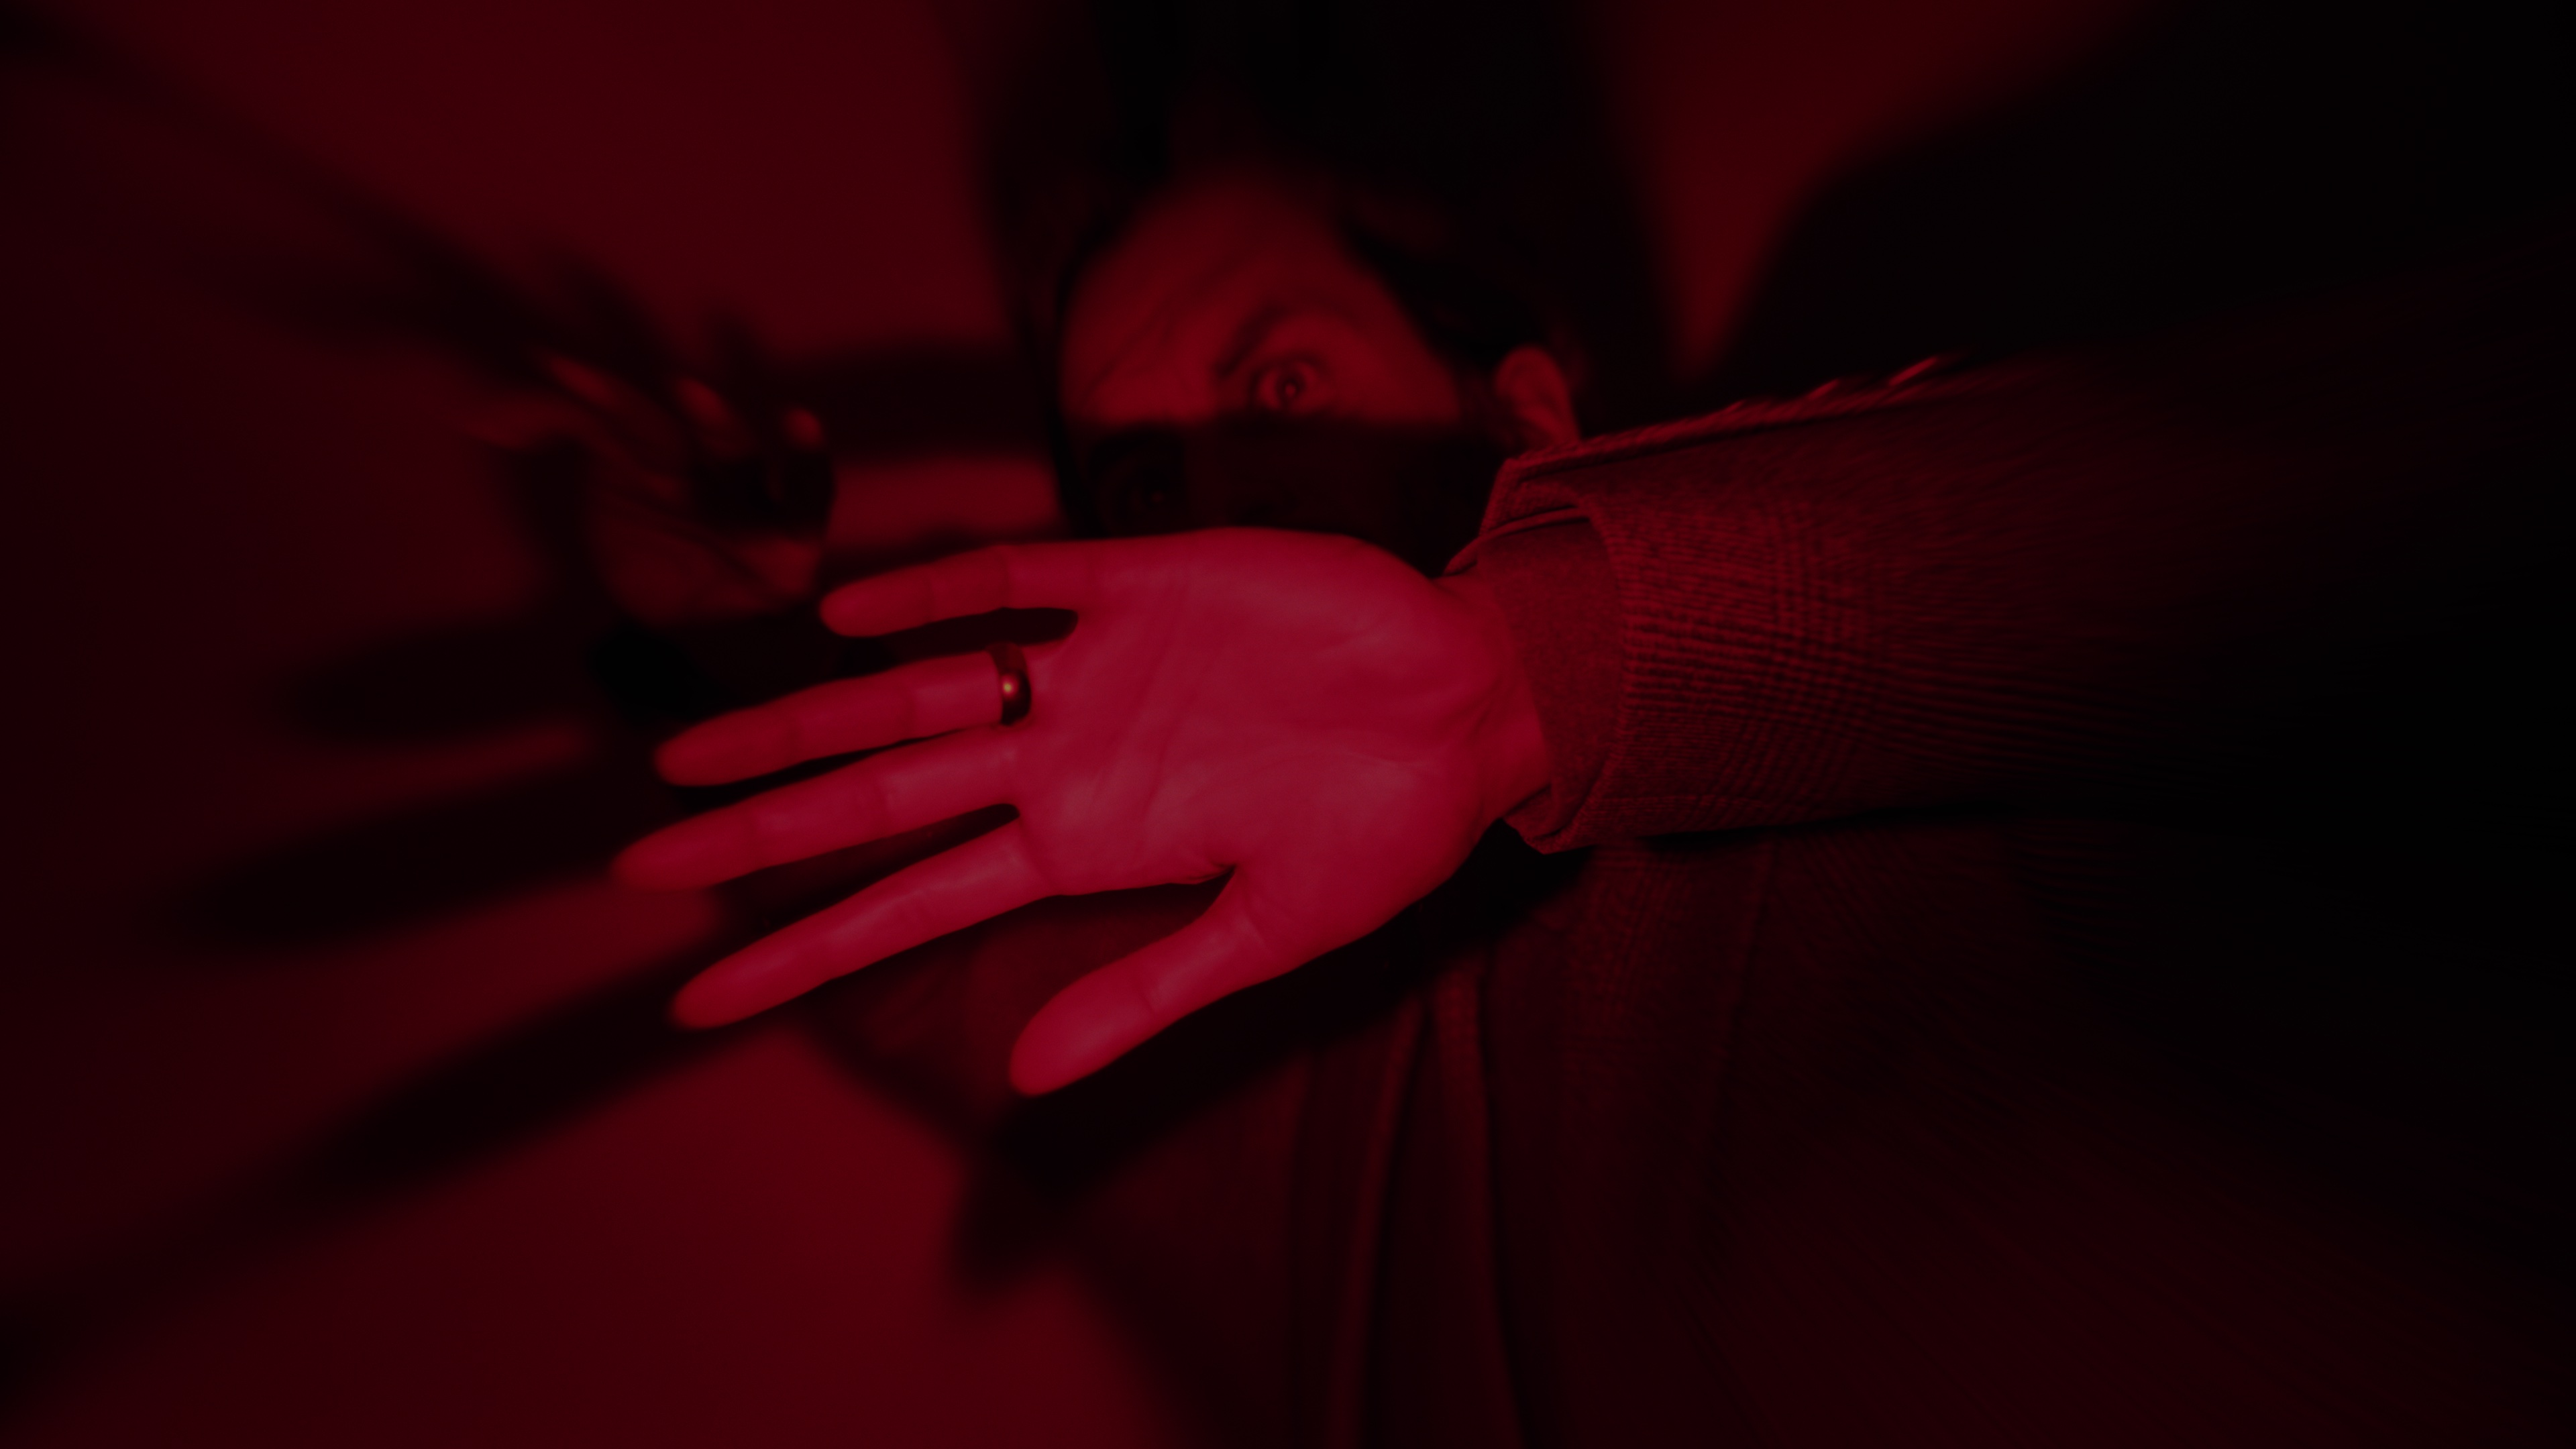 Captura de pantalla de Alan Wake 2 mostrando a Alan atrapado en el lugar oscuro bajo una luz roja